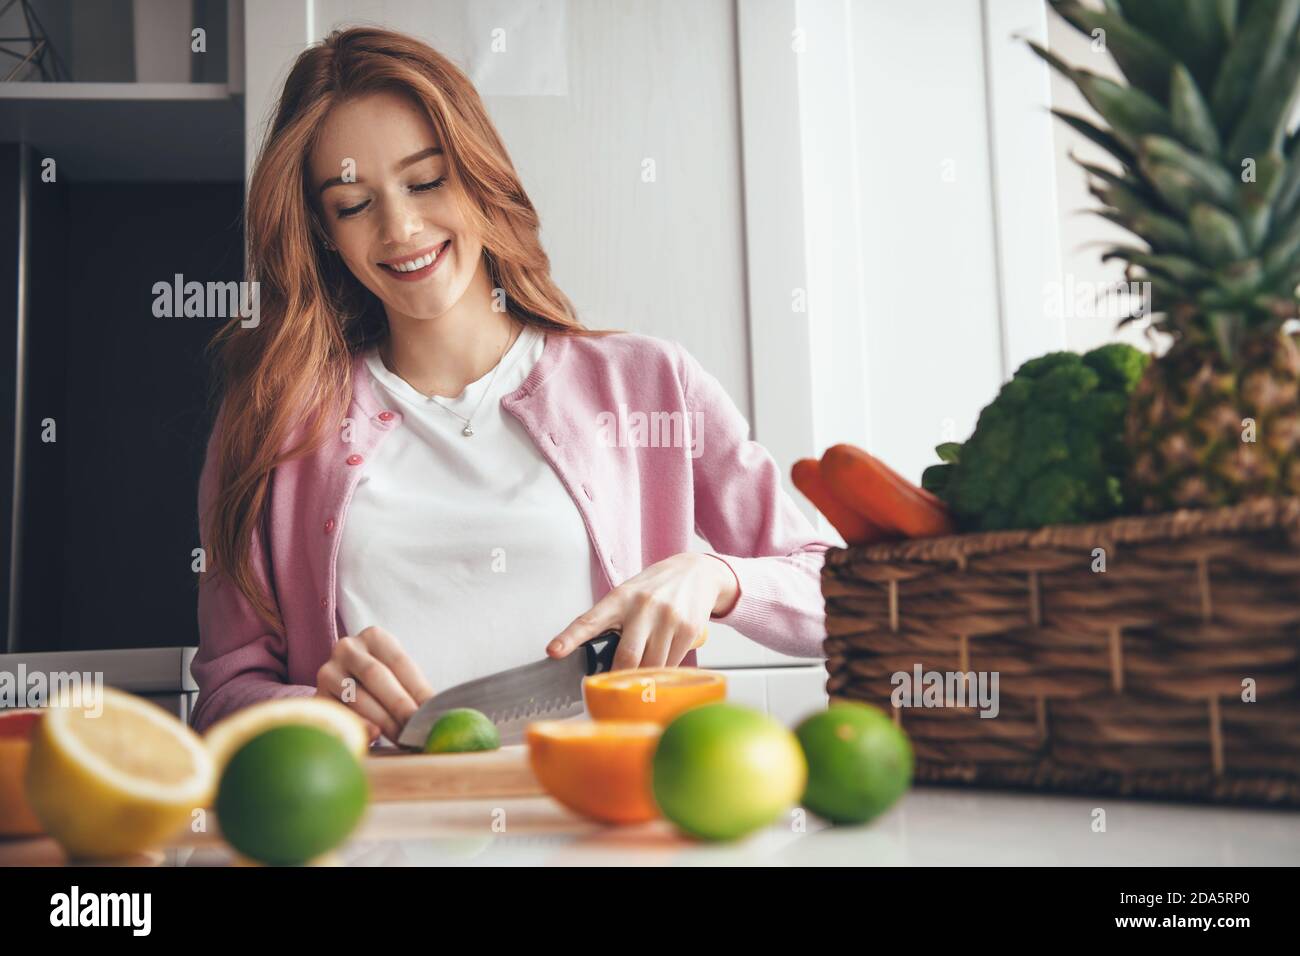 Adorable femme caucasienne avec des taches de rousseur et des cheveux rouges est en tranches un citron vert avec un couteau faisant une salade près d'un panier de fruits Banque D'Images